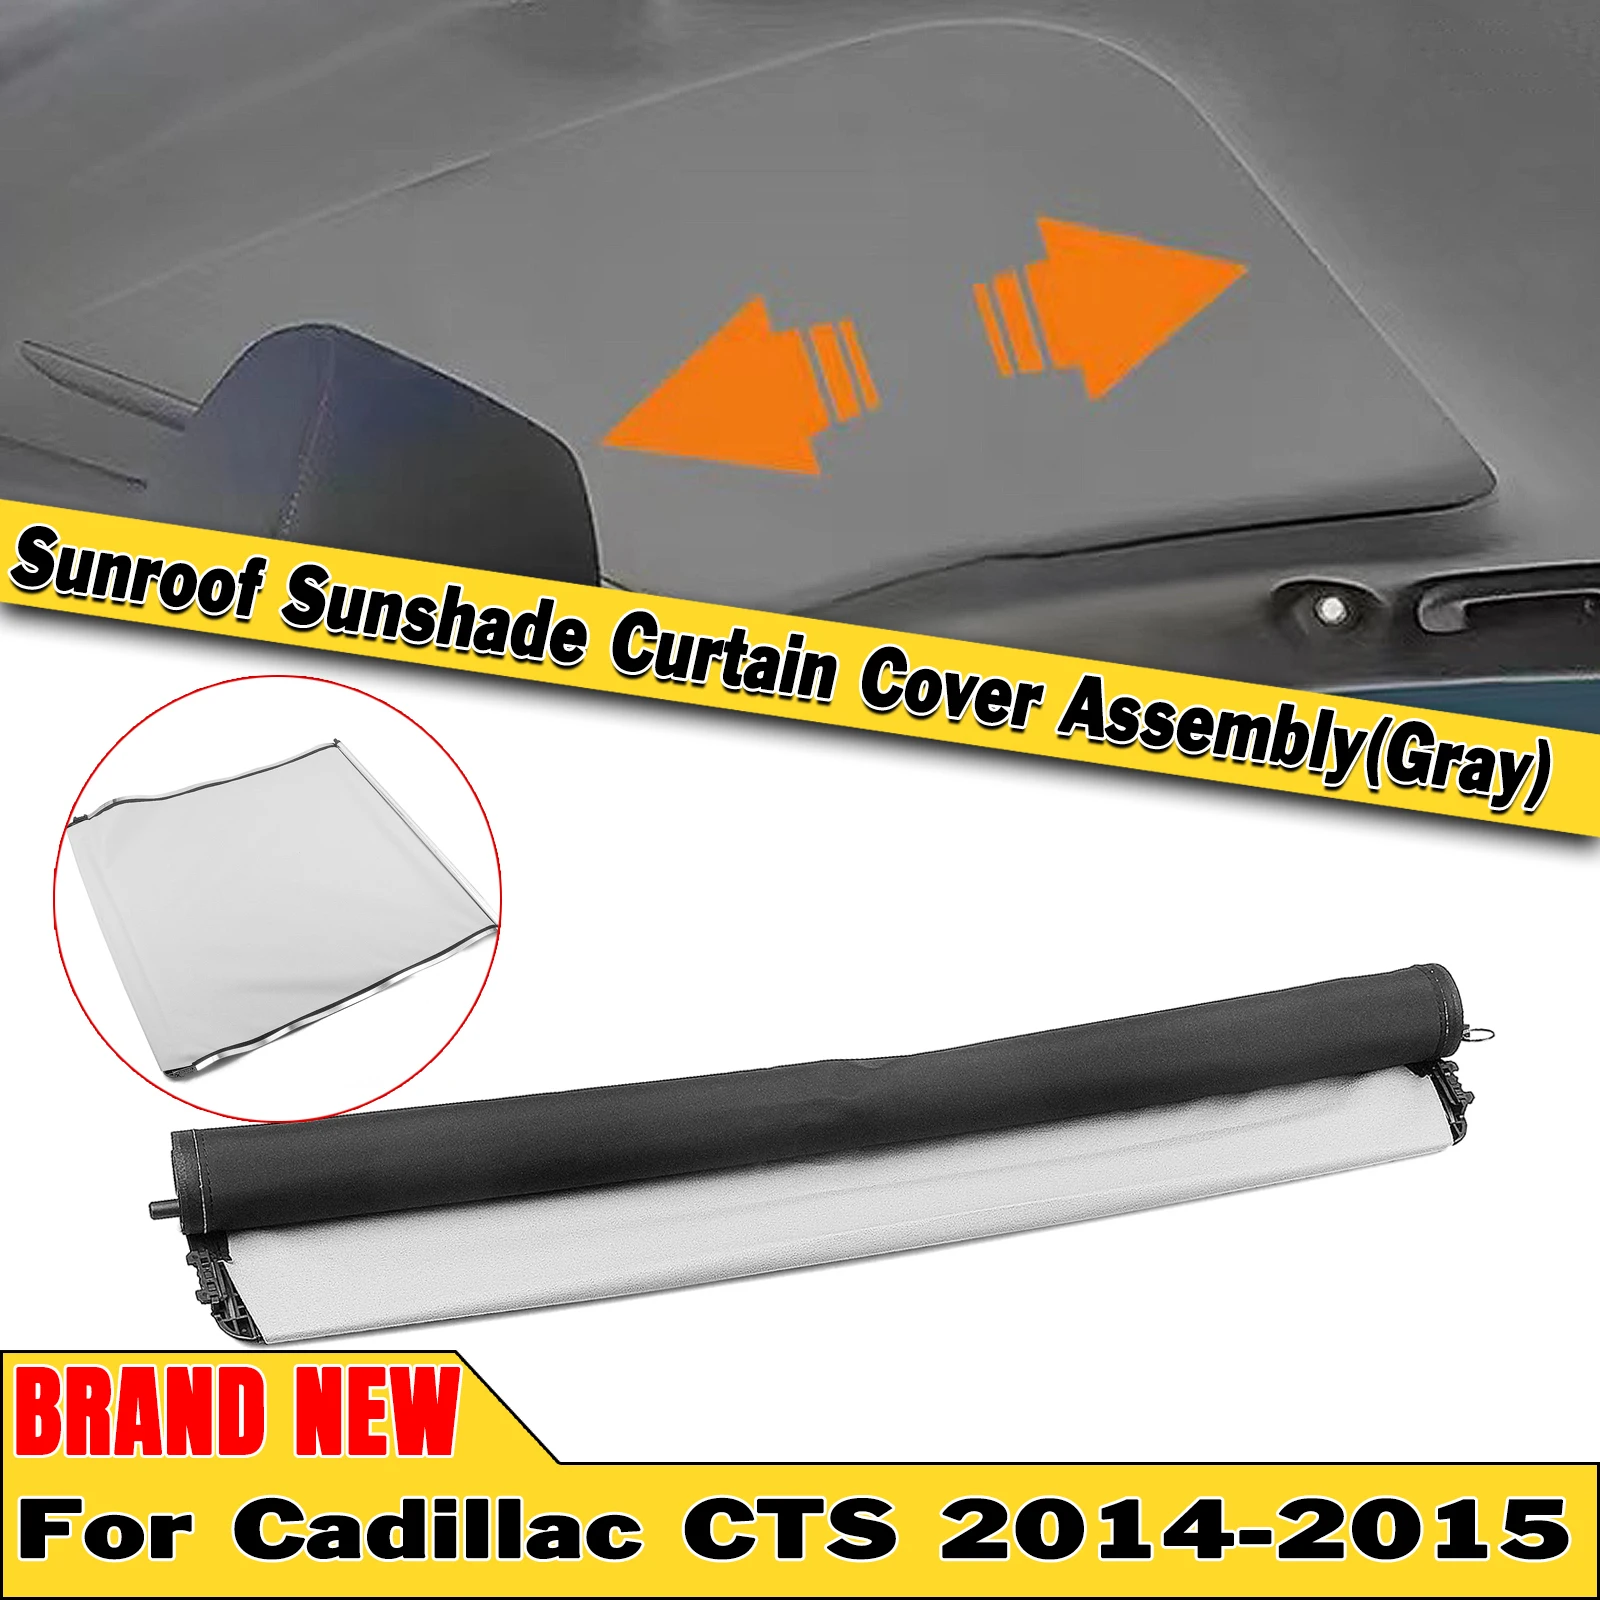 

Автомобильная Солнцезащитная занавеска в сборе для Cadillac CTS 2014-2015, 4-дверная серая роликовая шторка, купол, Солнцезащитная крыша в сборе, солнцезащитный козырек